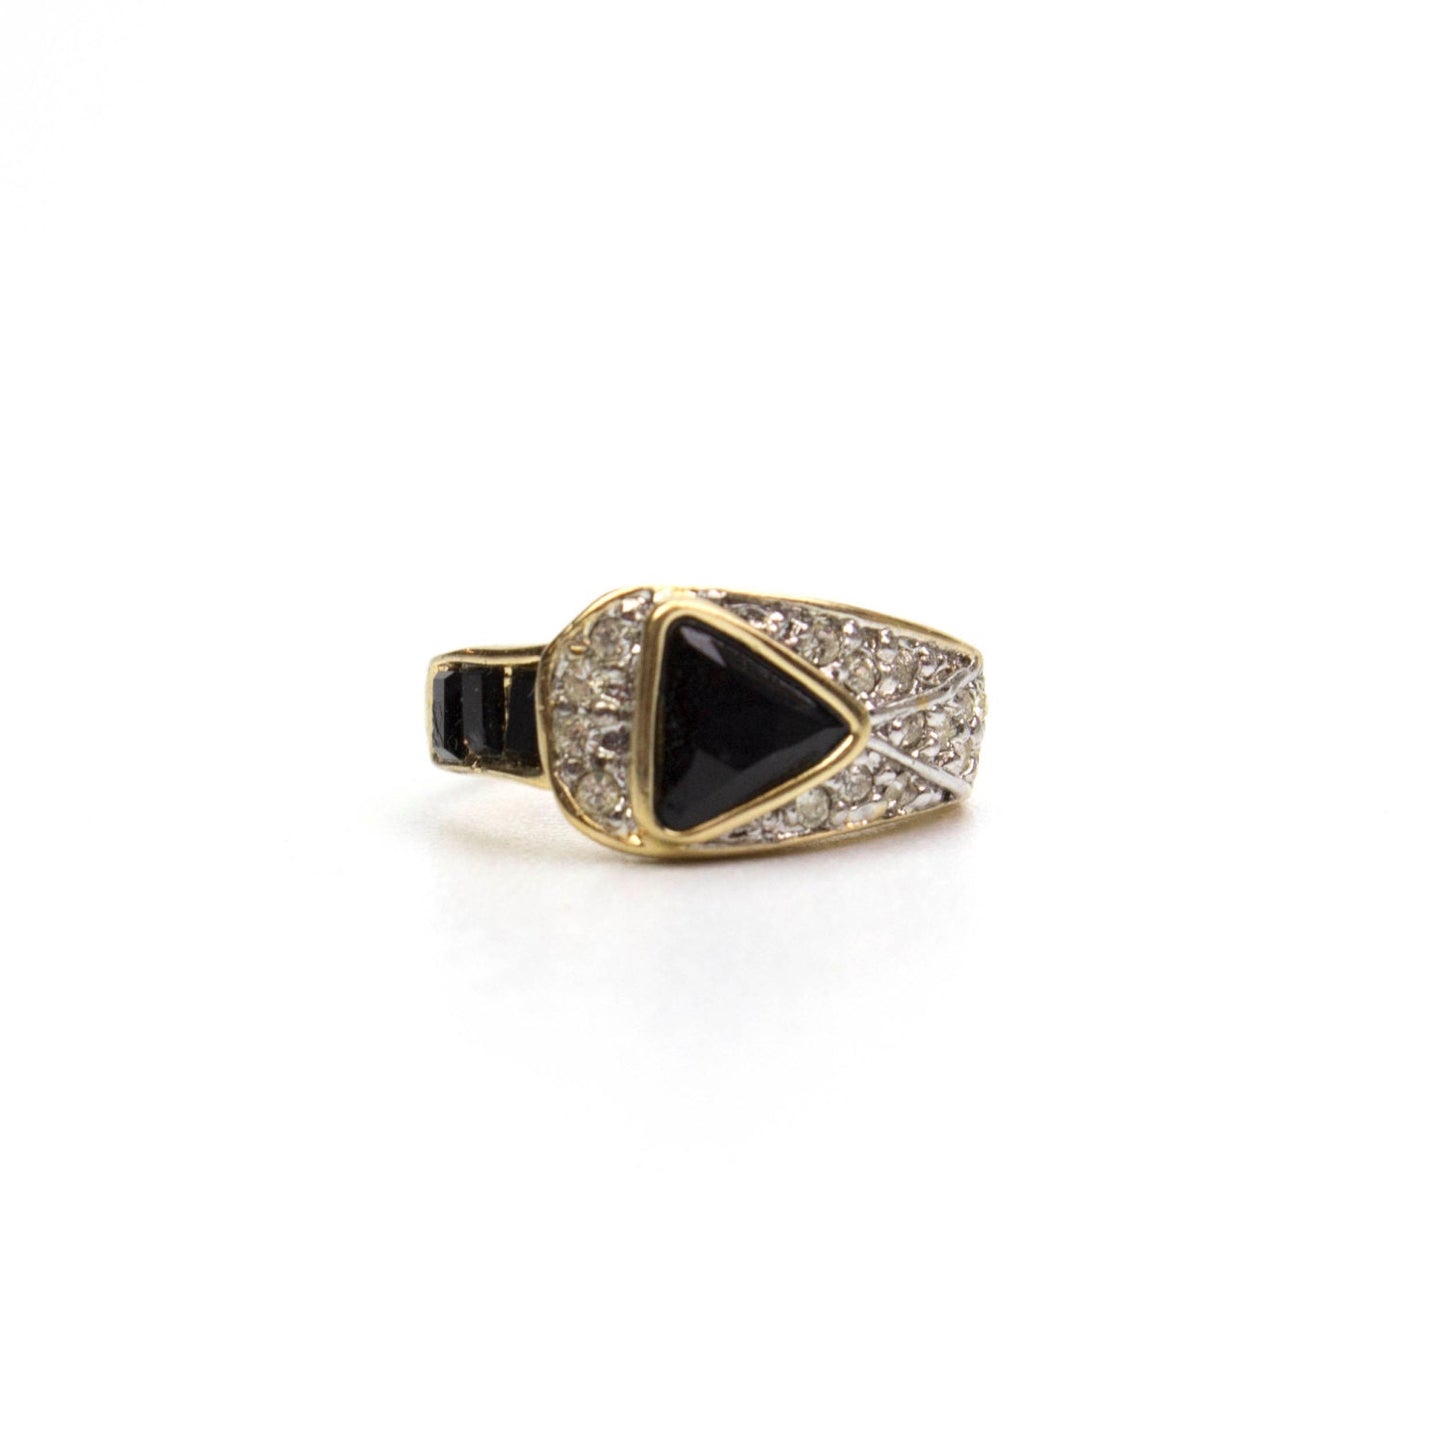 Vintage Ring Pave Trillion Cut Swarovski Crystals 18k Gold  Electroplated Band R2932